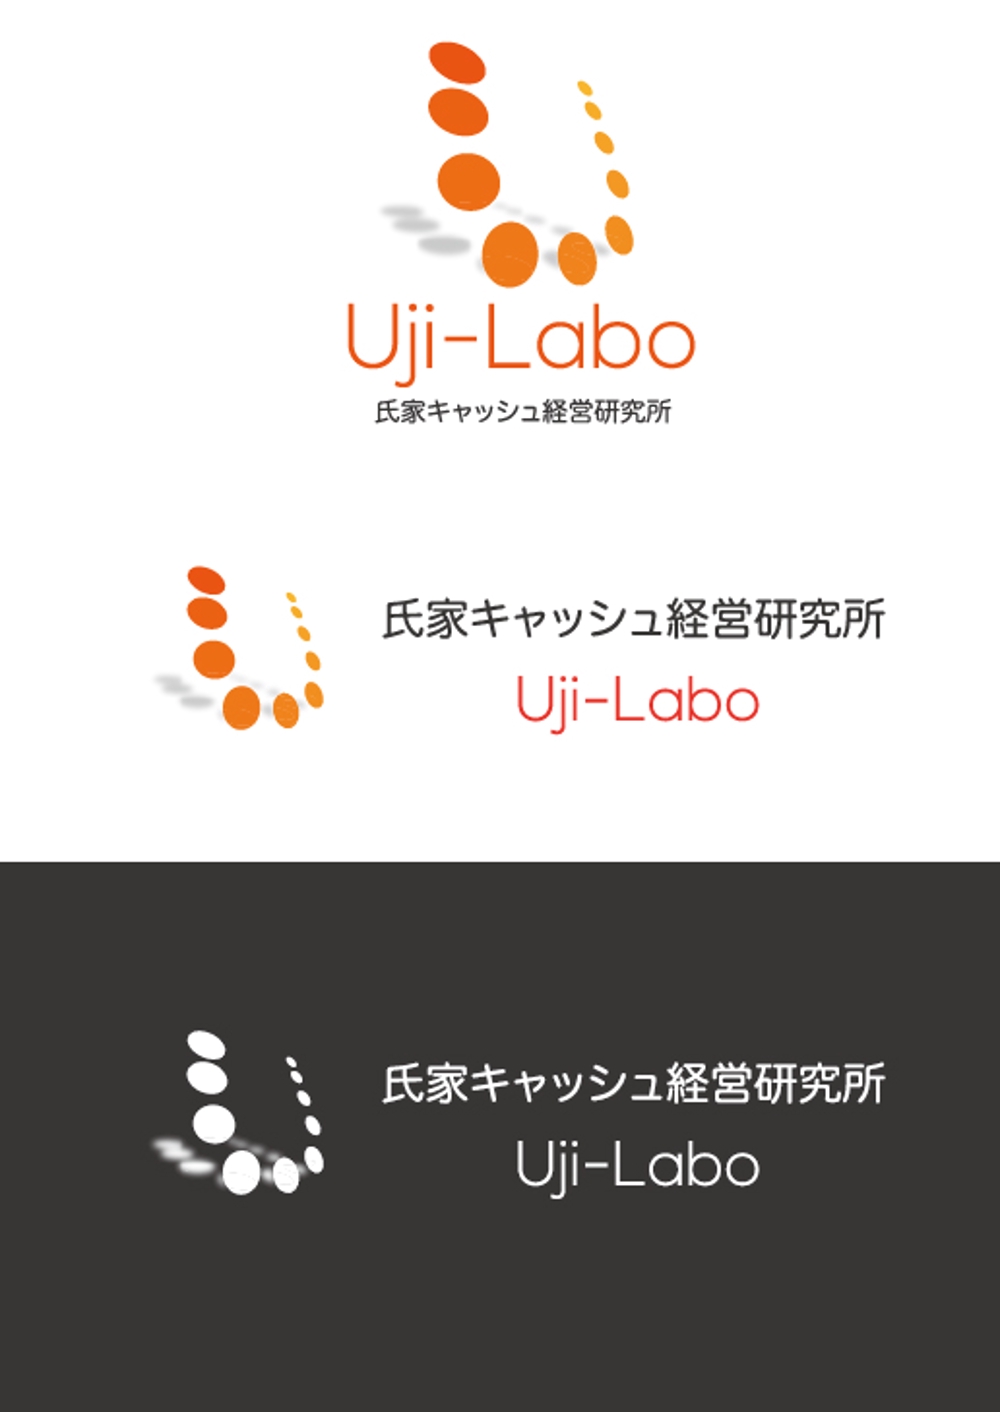 Uji-Labo様_c.jpg